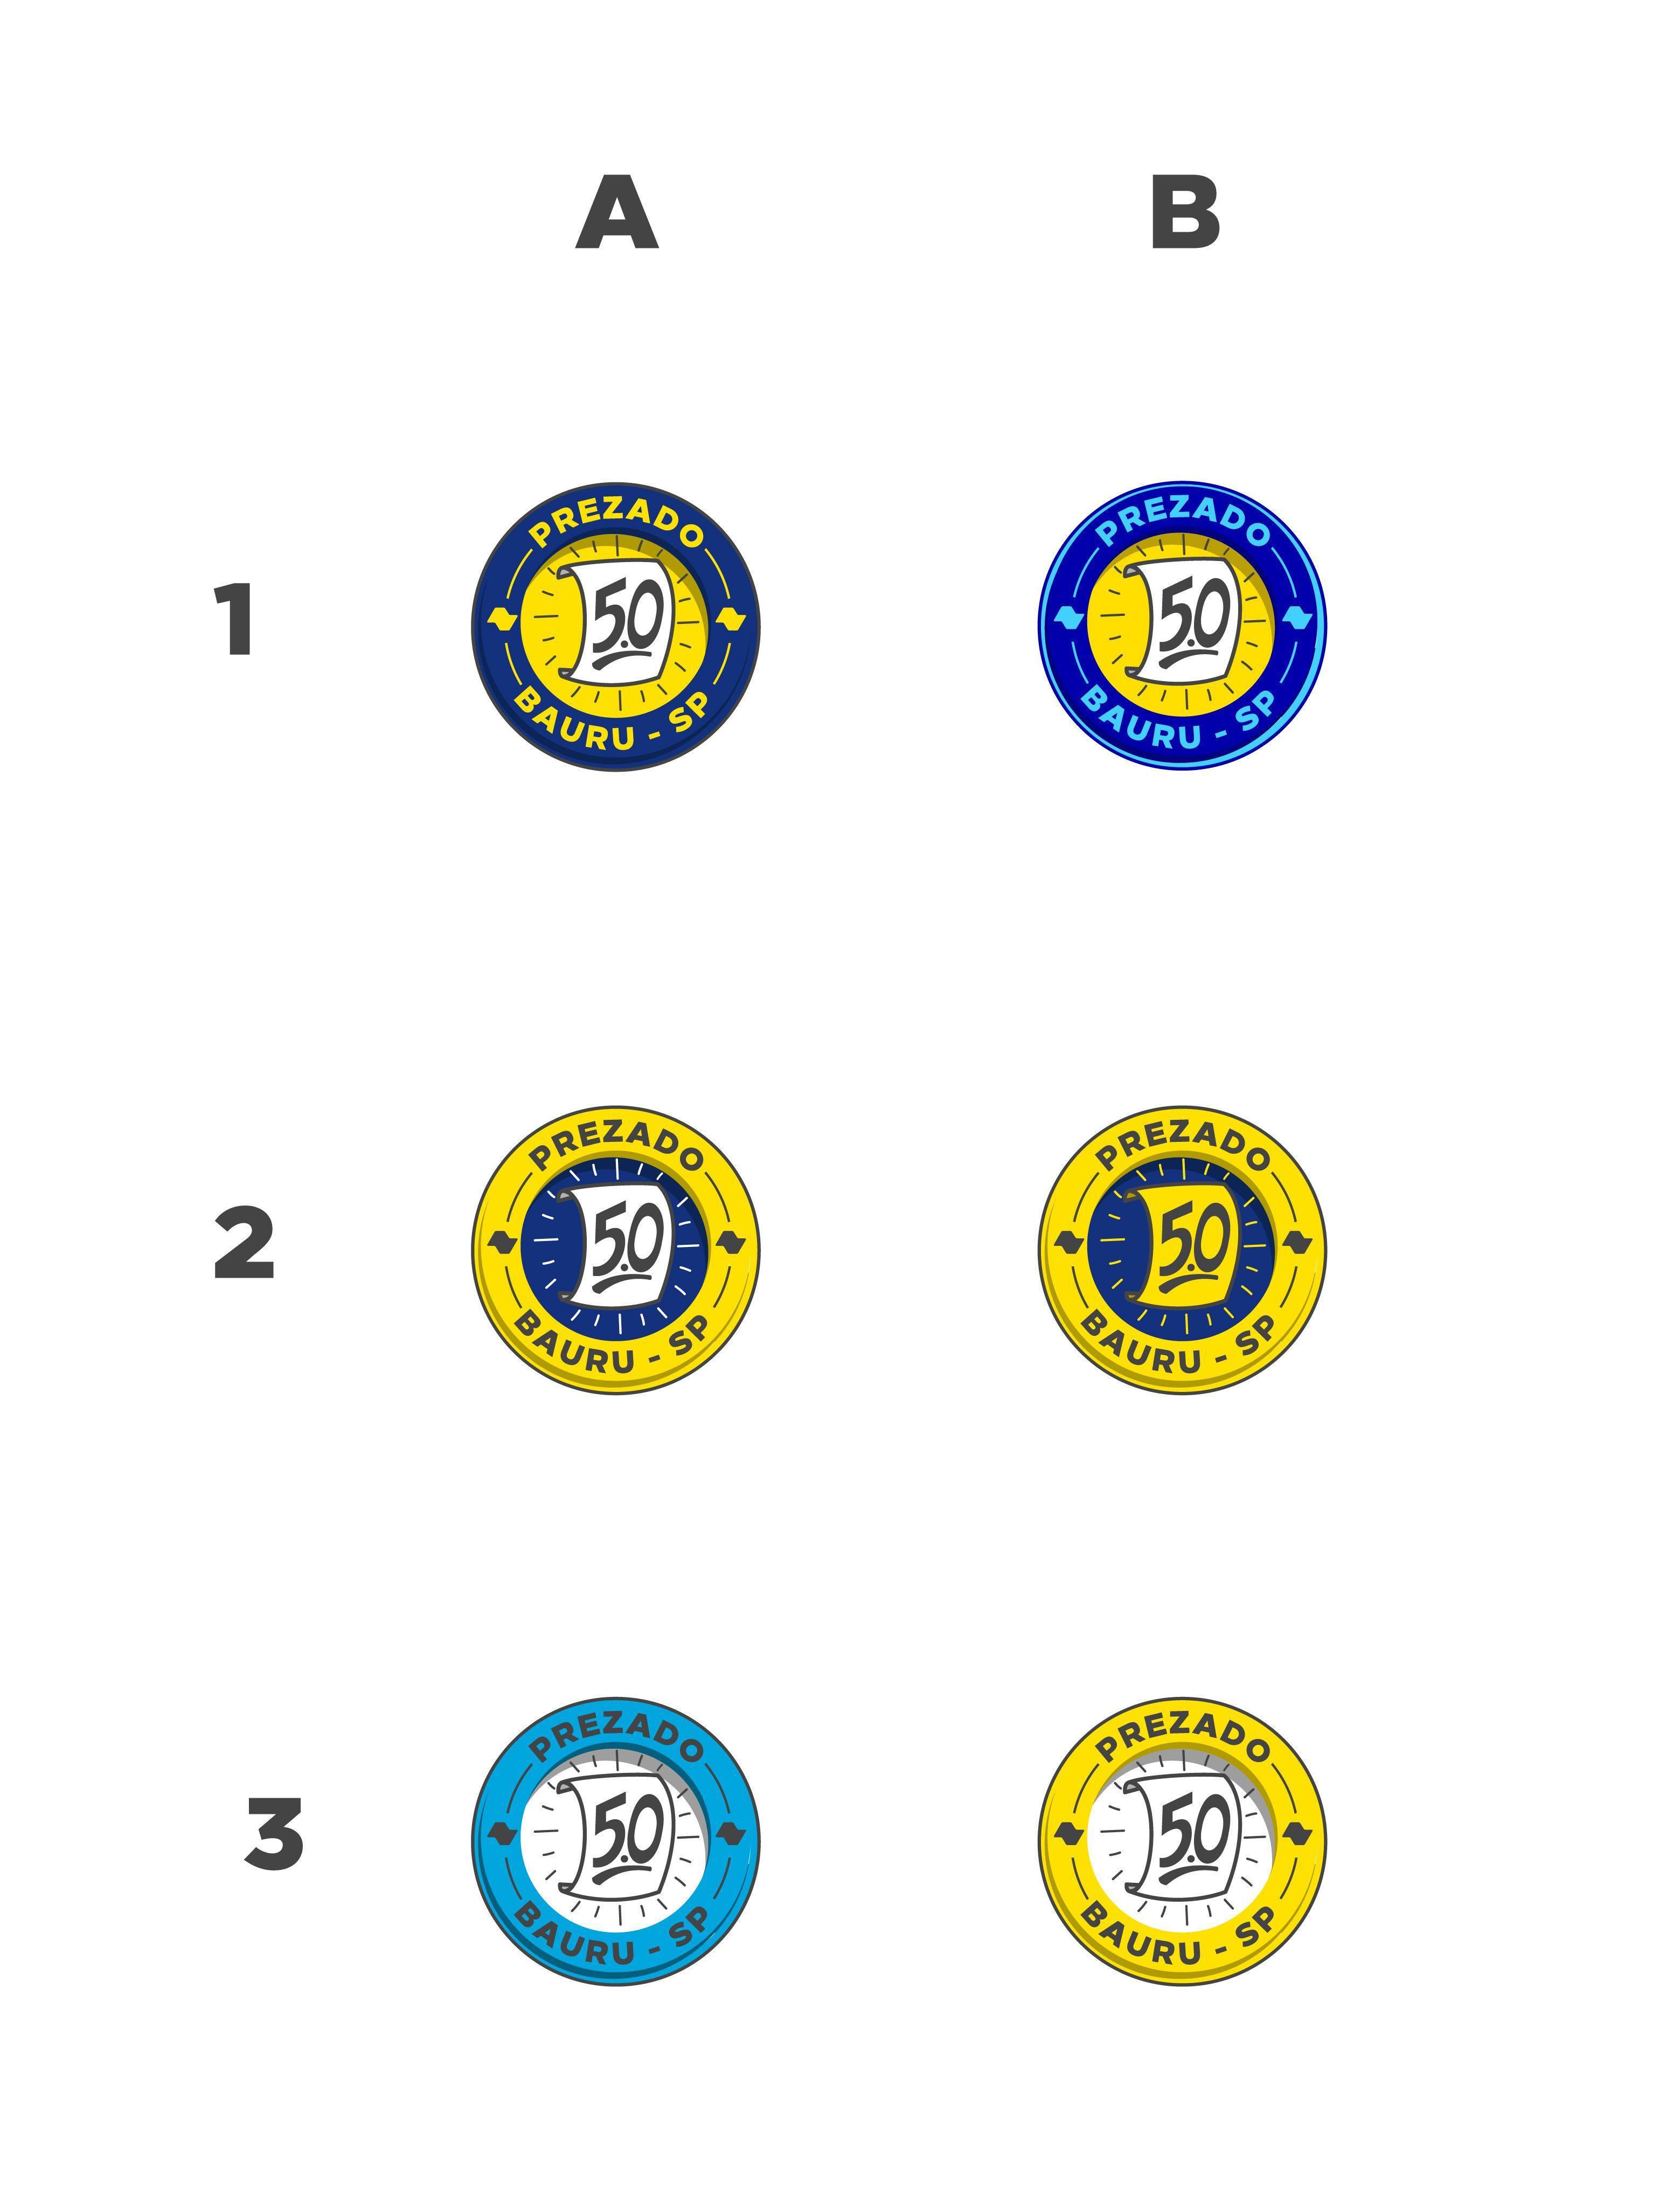 Blue Circle Band Logo - Local band logo, still looking too cartoony. Feedback? : logodesign